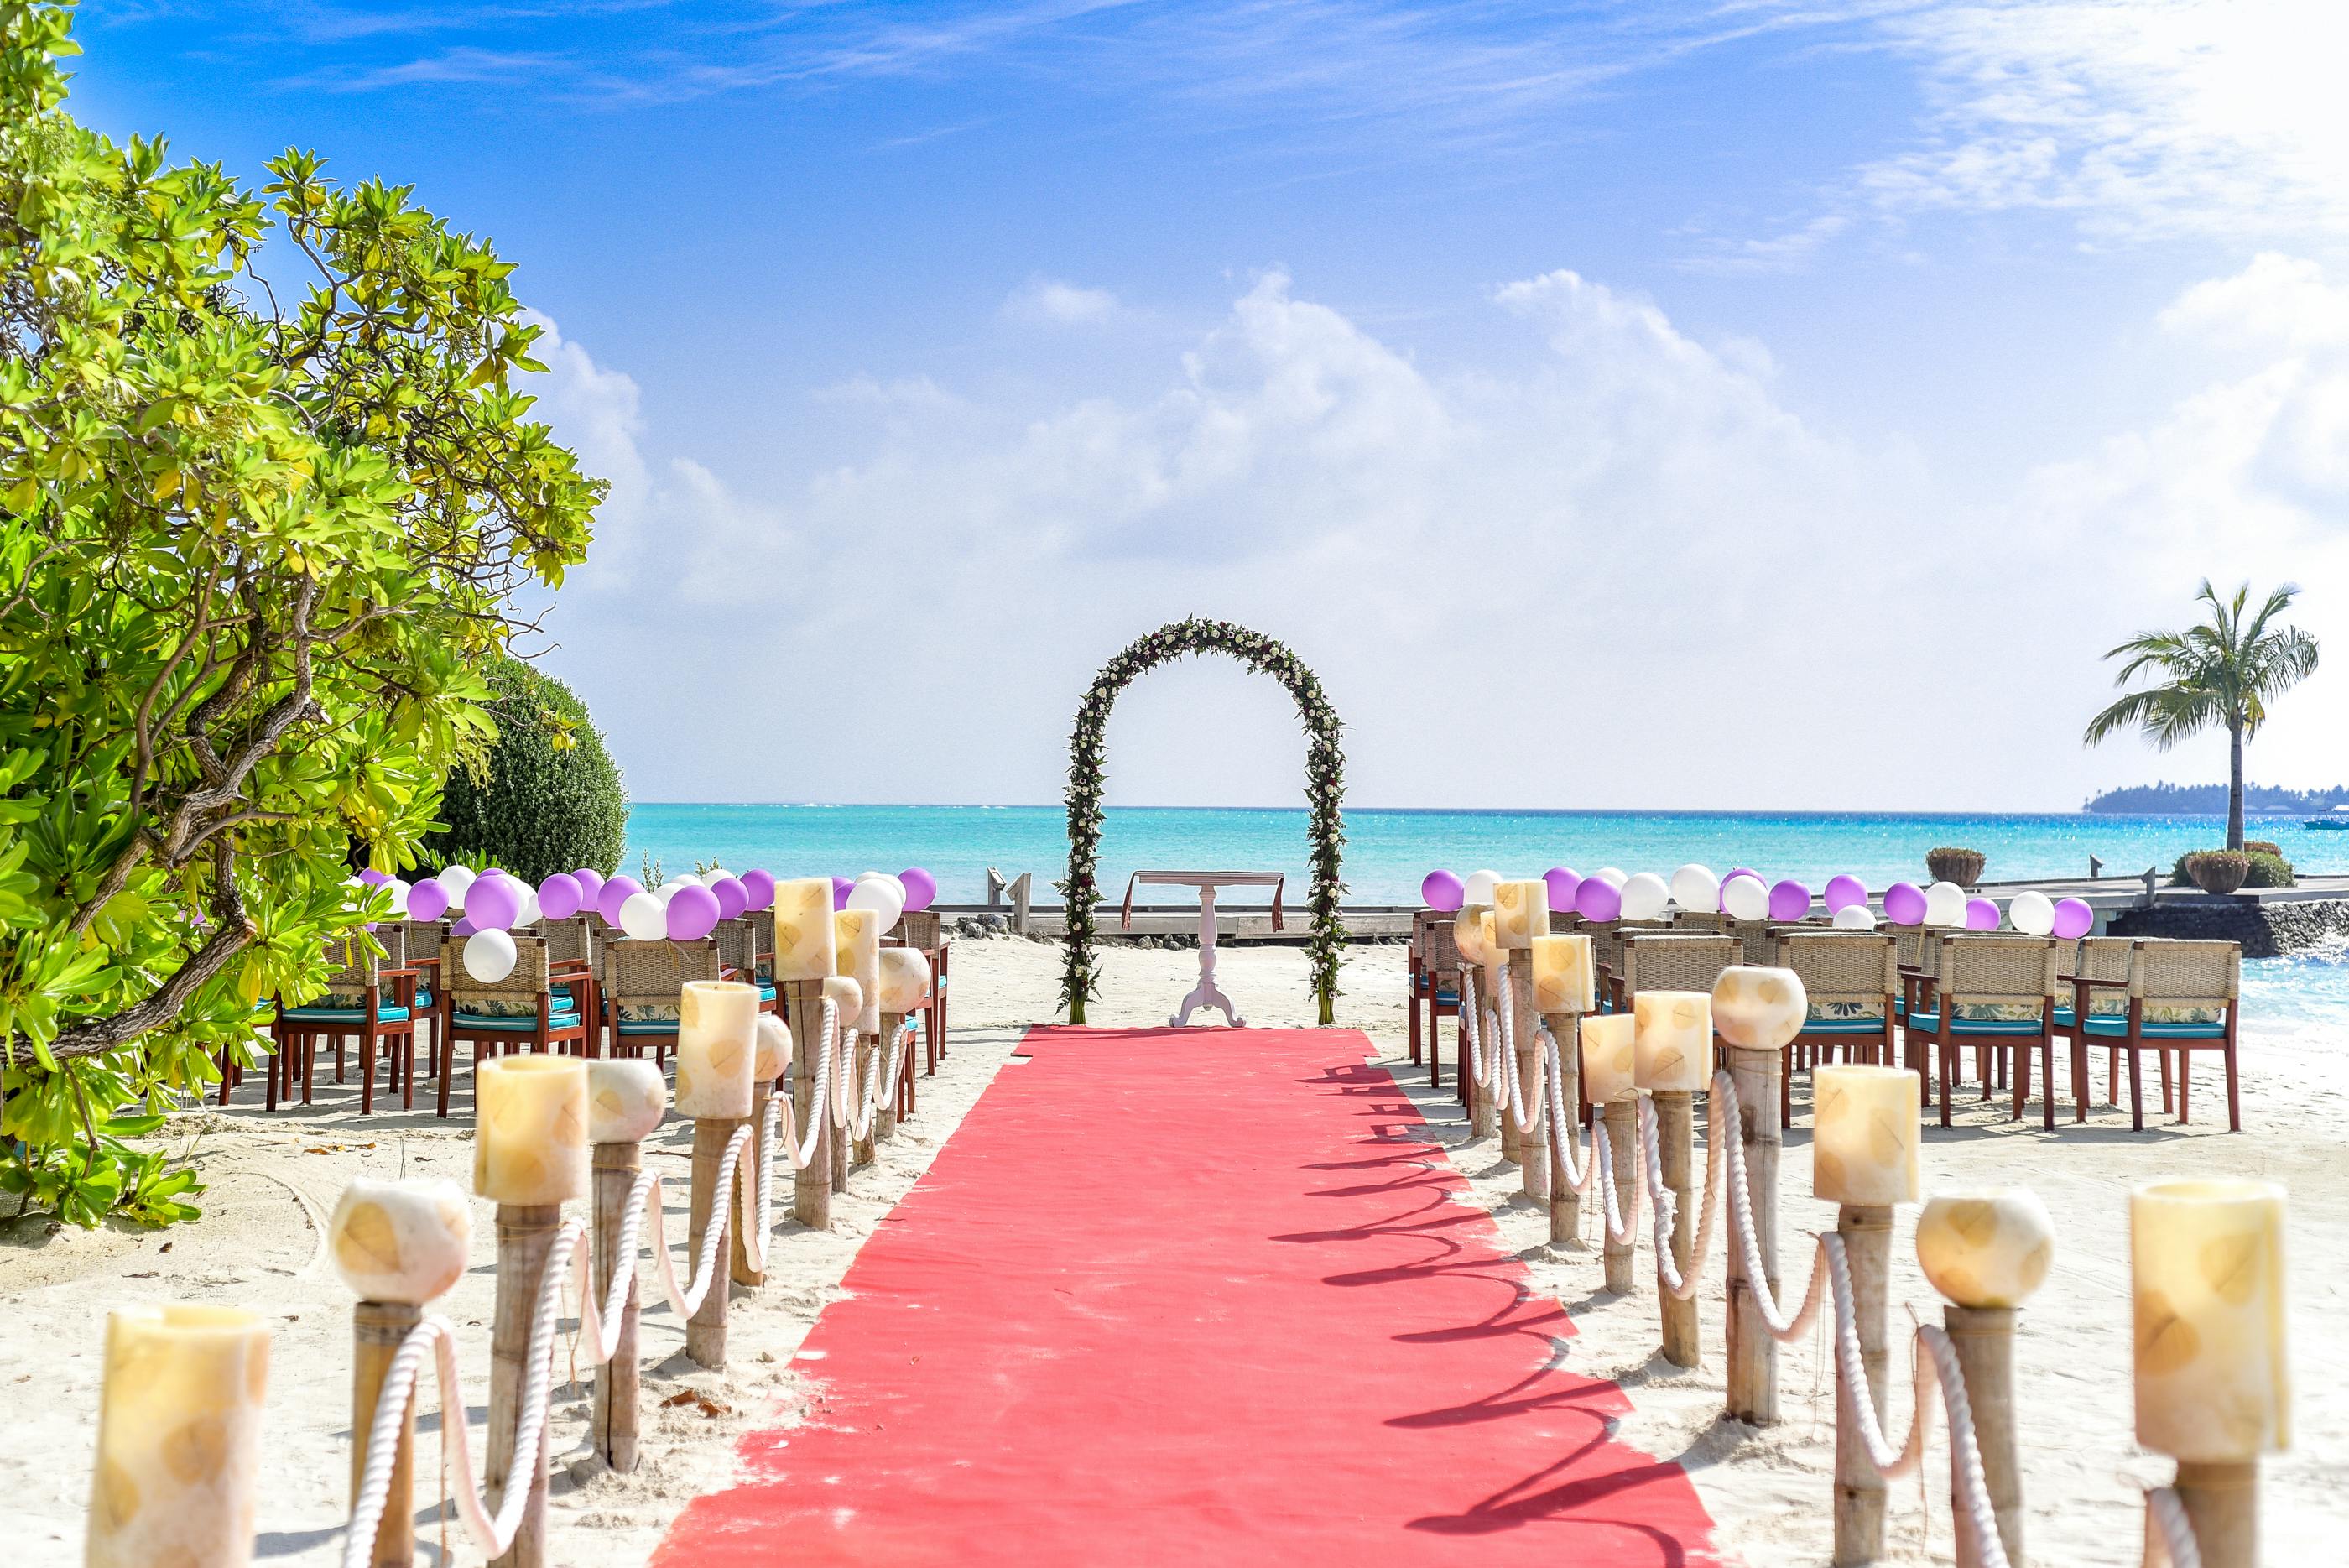 Hình ảnh cưới trên bãi biển là một trải nghiệm không thể quên trong cuộc đời. Với ánh nắng vàng rực rỡ, bãi cát trắng mịn và khung cảnh đẹp tuyệt vời, chú rể và cô dâu sẽ có những hình ảnh tuyệt đẹp để lưu giữ kỷ niệm ở Đảo Phú Quốc.